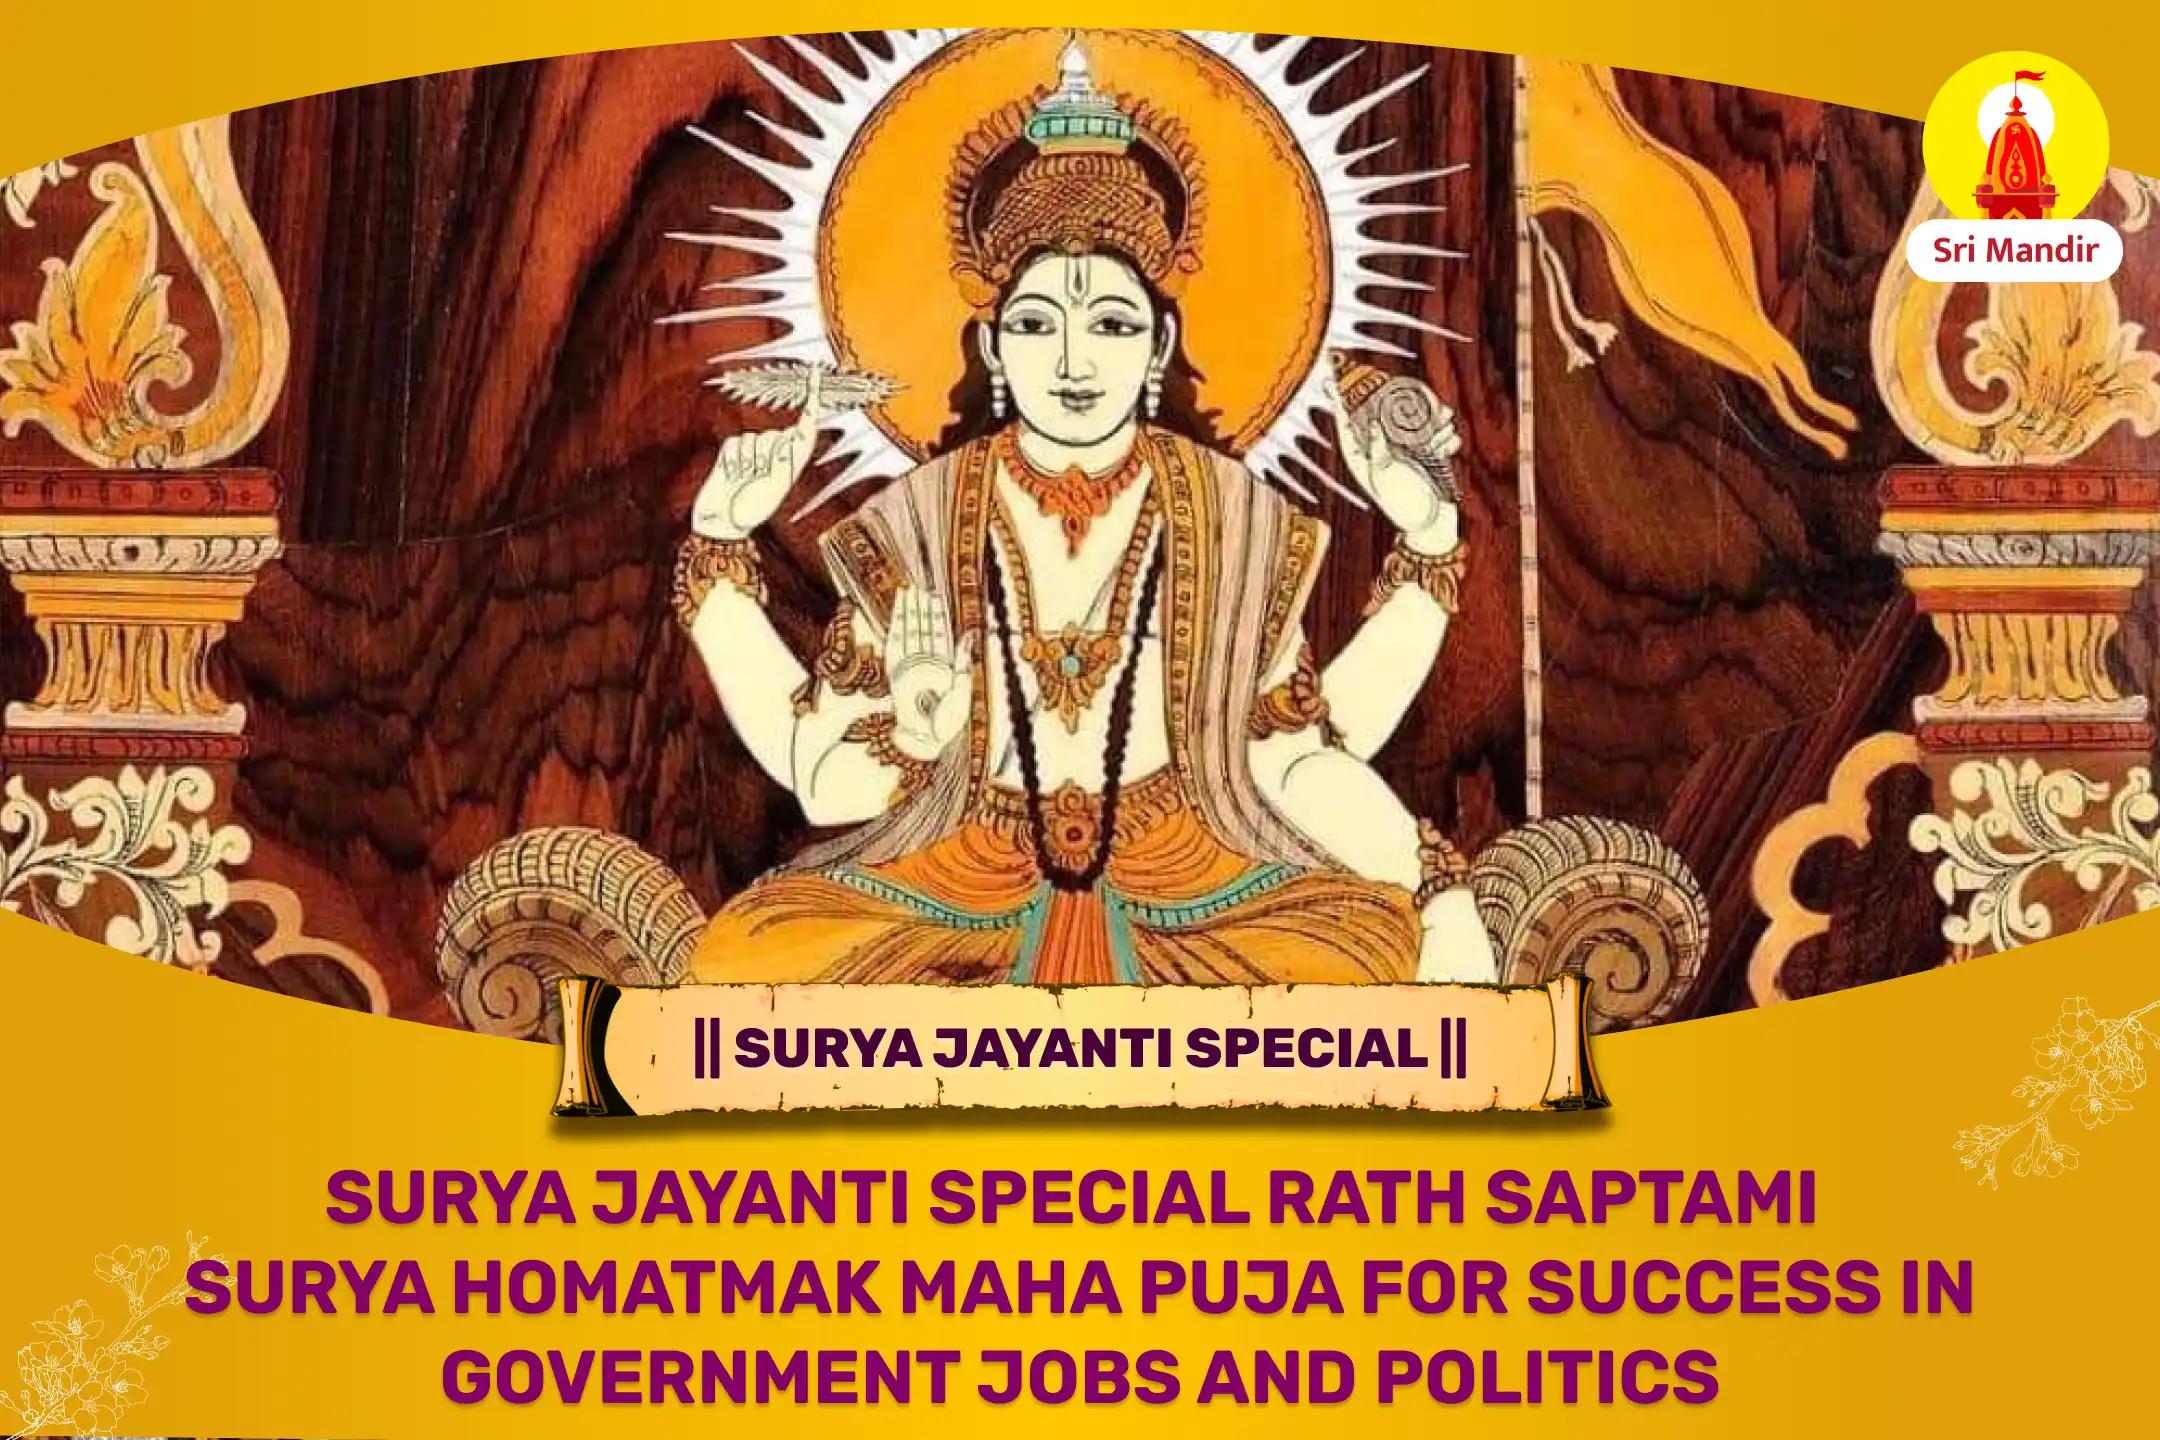 Surya Jayanti Special Rath Saptami Surya Homatmak Maha Puja for Success in Government Jobs and Politics 